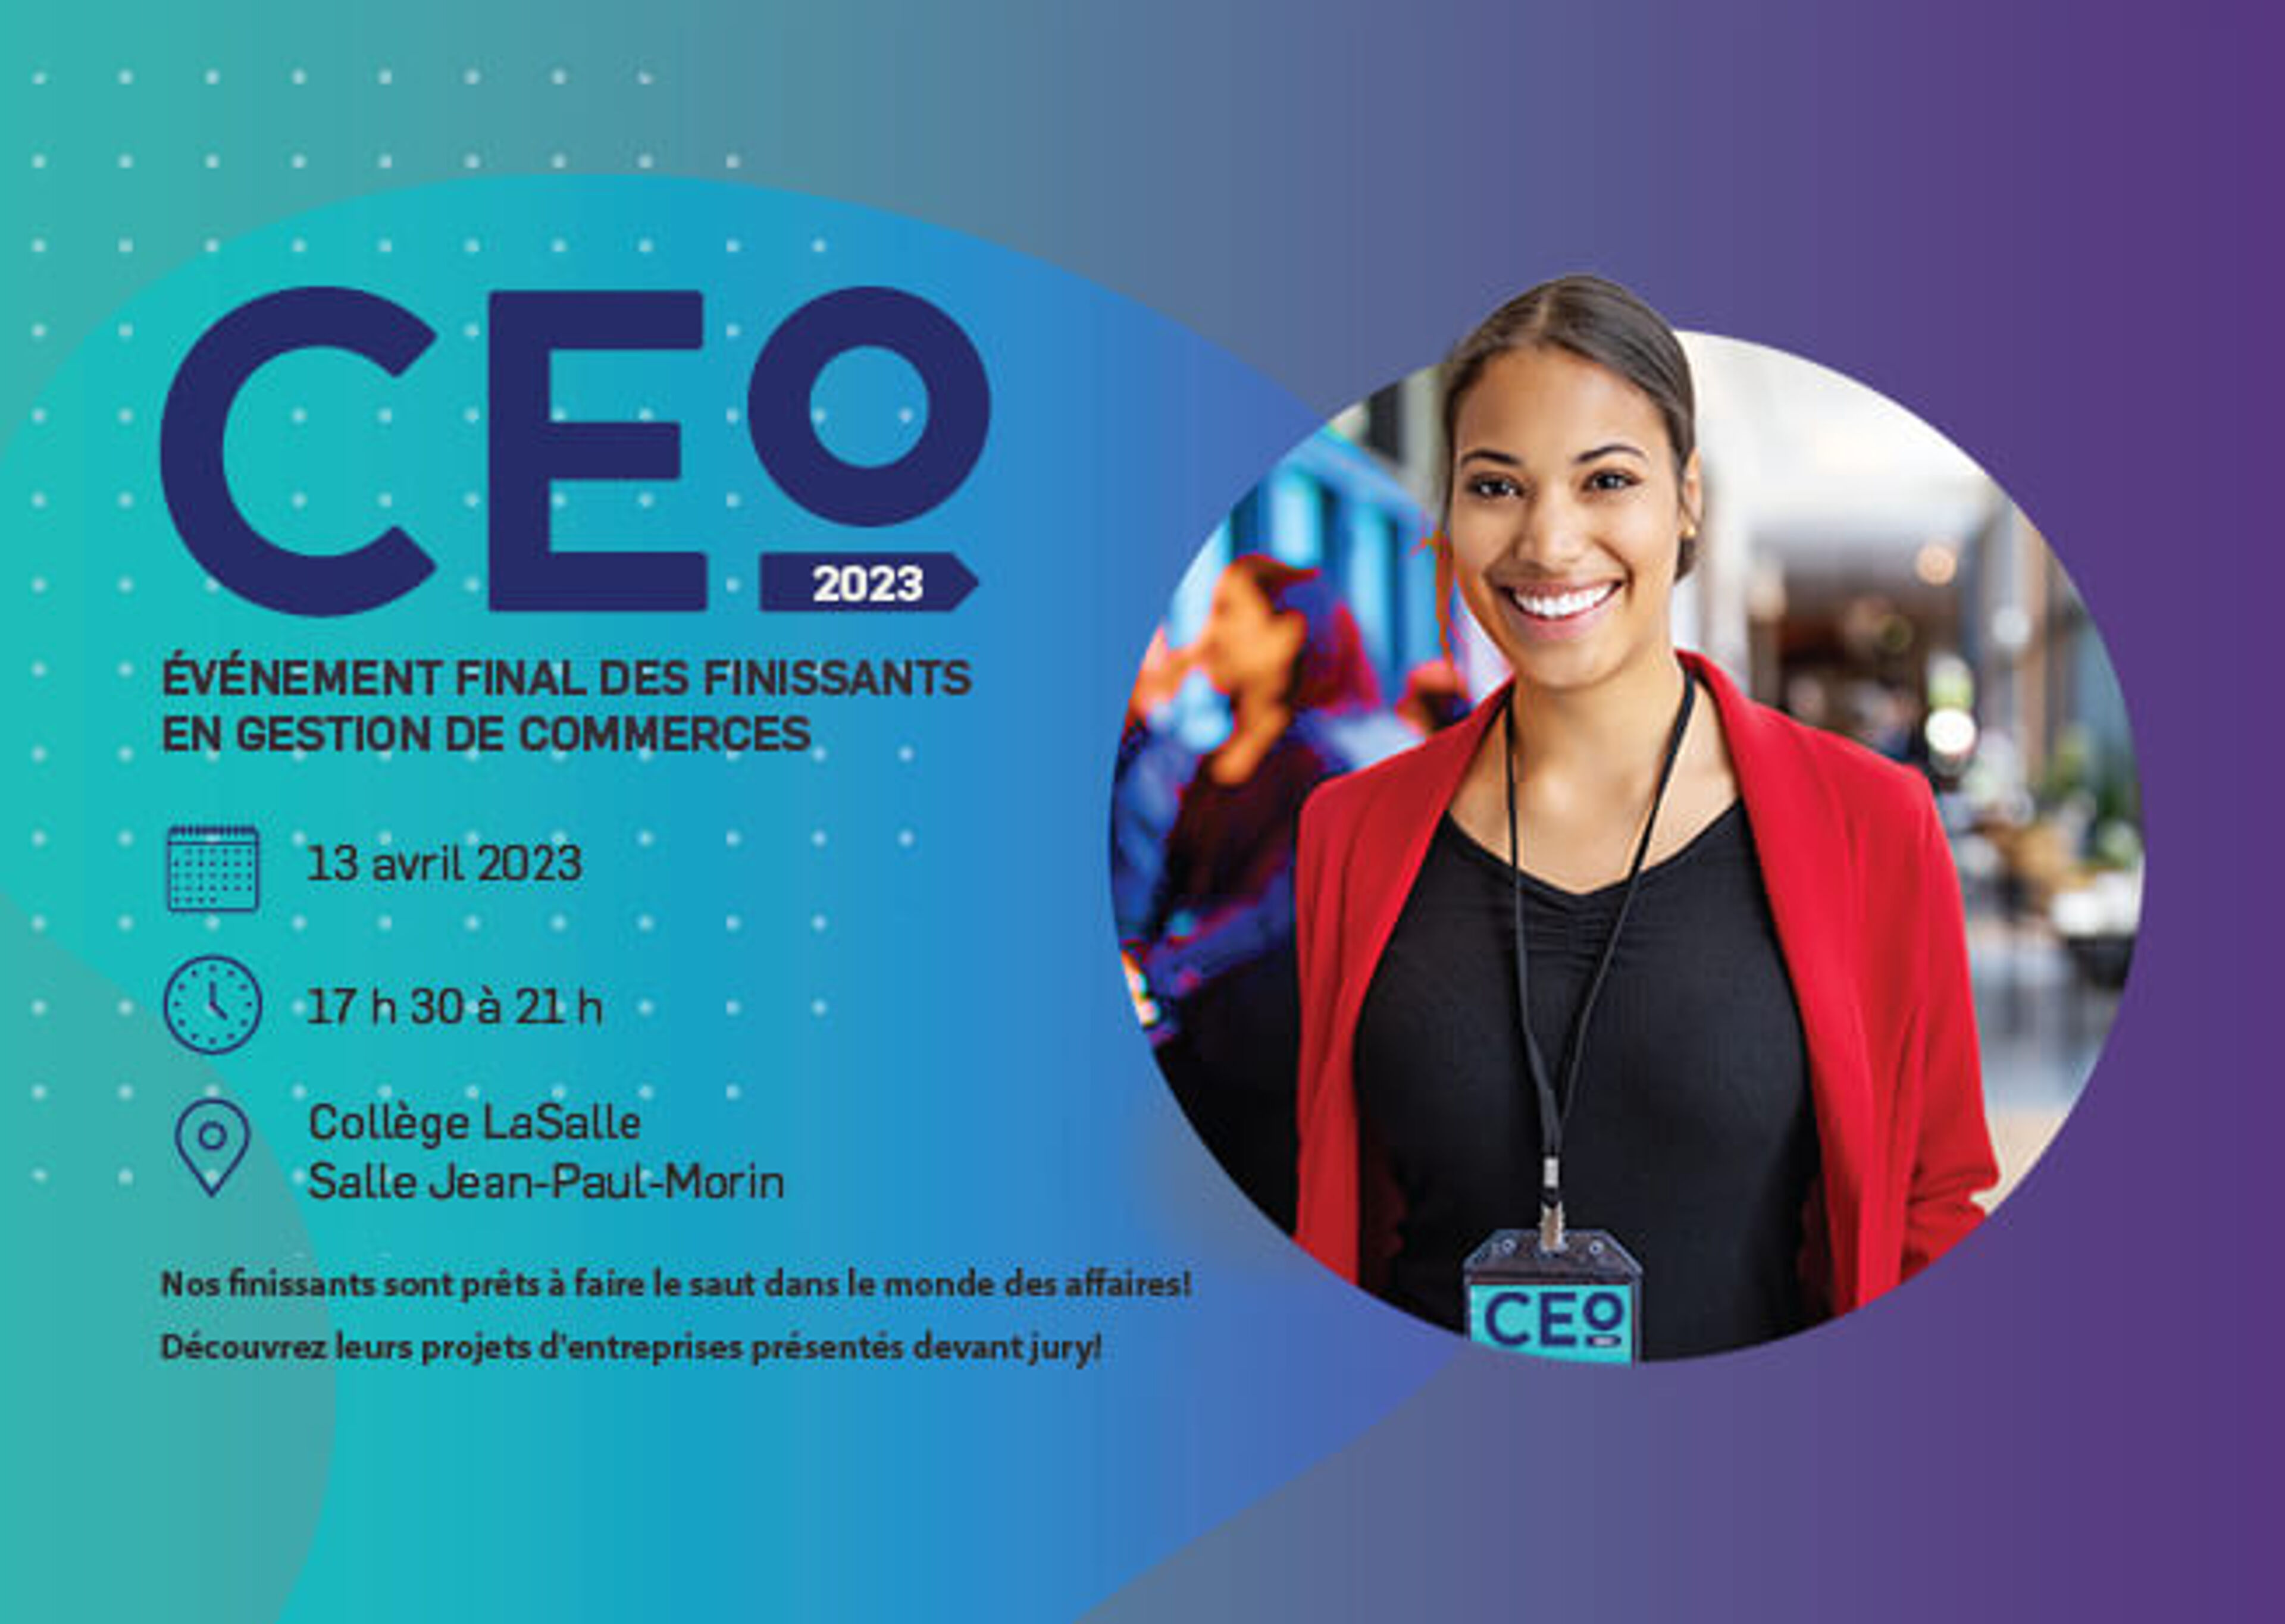 Une affiche accueillante pour l'événement CEO 2023, présentant une diplômée souriante en tenue professionnelle, avec les détails de l'événement final pour les diplômés en Gestion d'Entreprise prévu pour le 13 avril 2023.